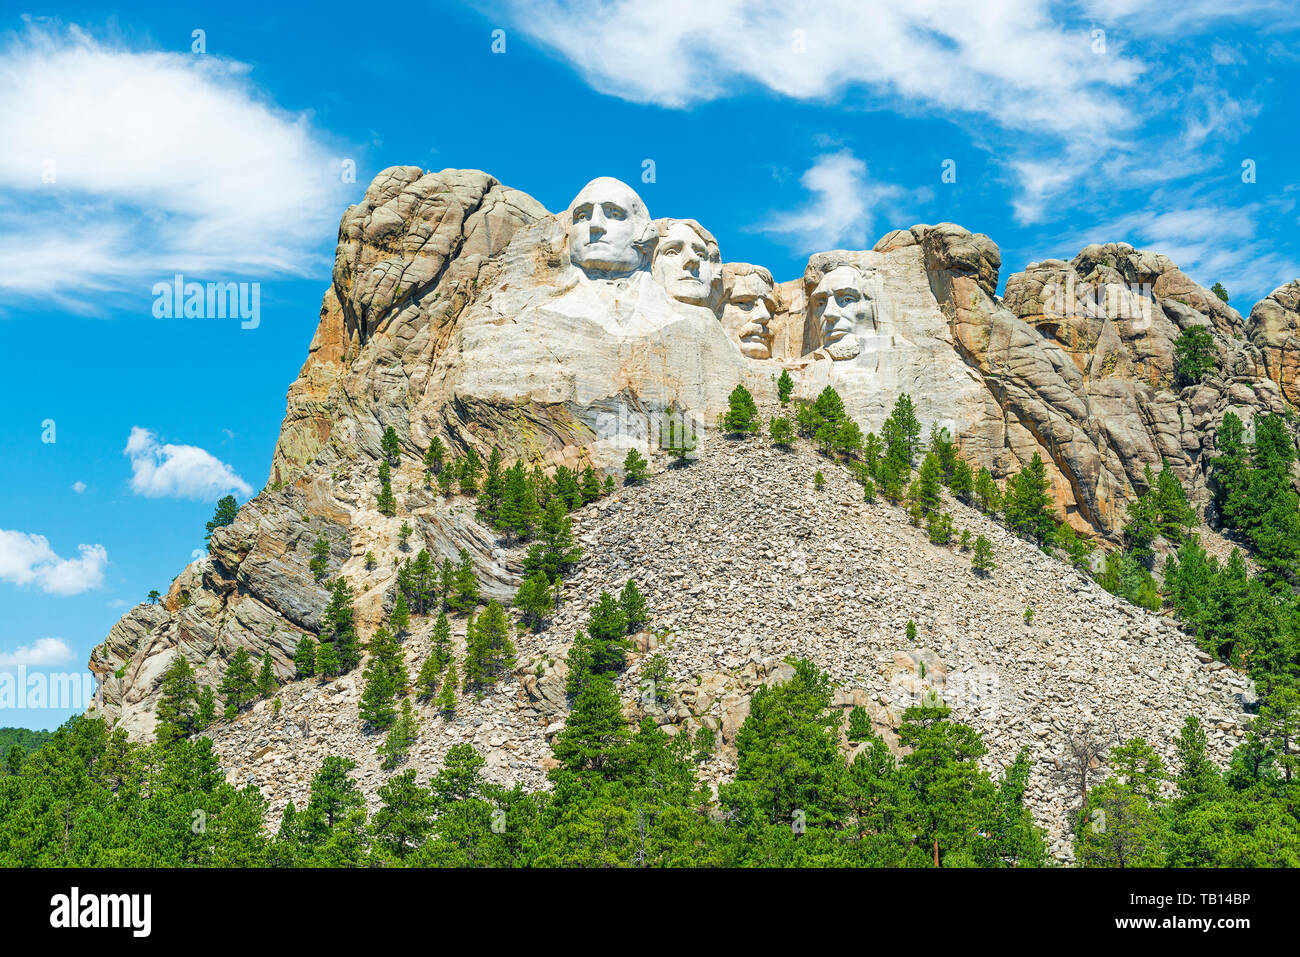 Il monte Rushmore monumento nazionale con una foresta di alberi di pino in Black Hills nei pressi di Rapid City nel South Dakota, Stati Uniti d'America, Stati Uniti d'America. Foto Stock